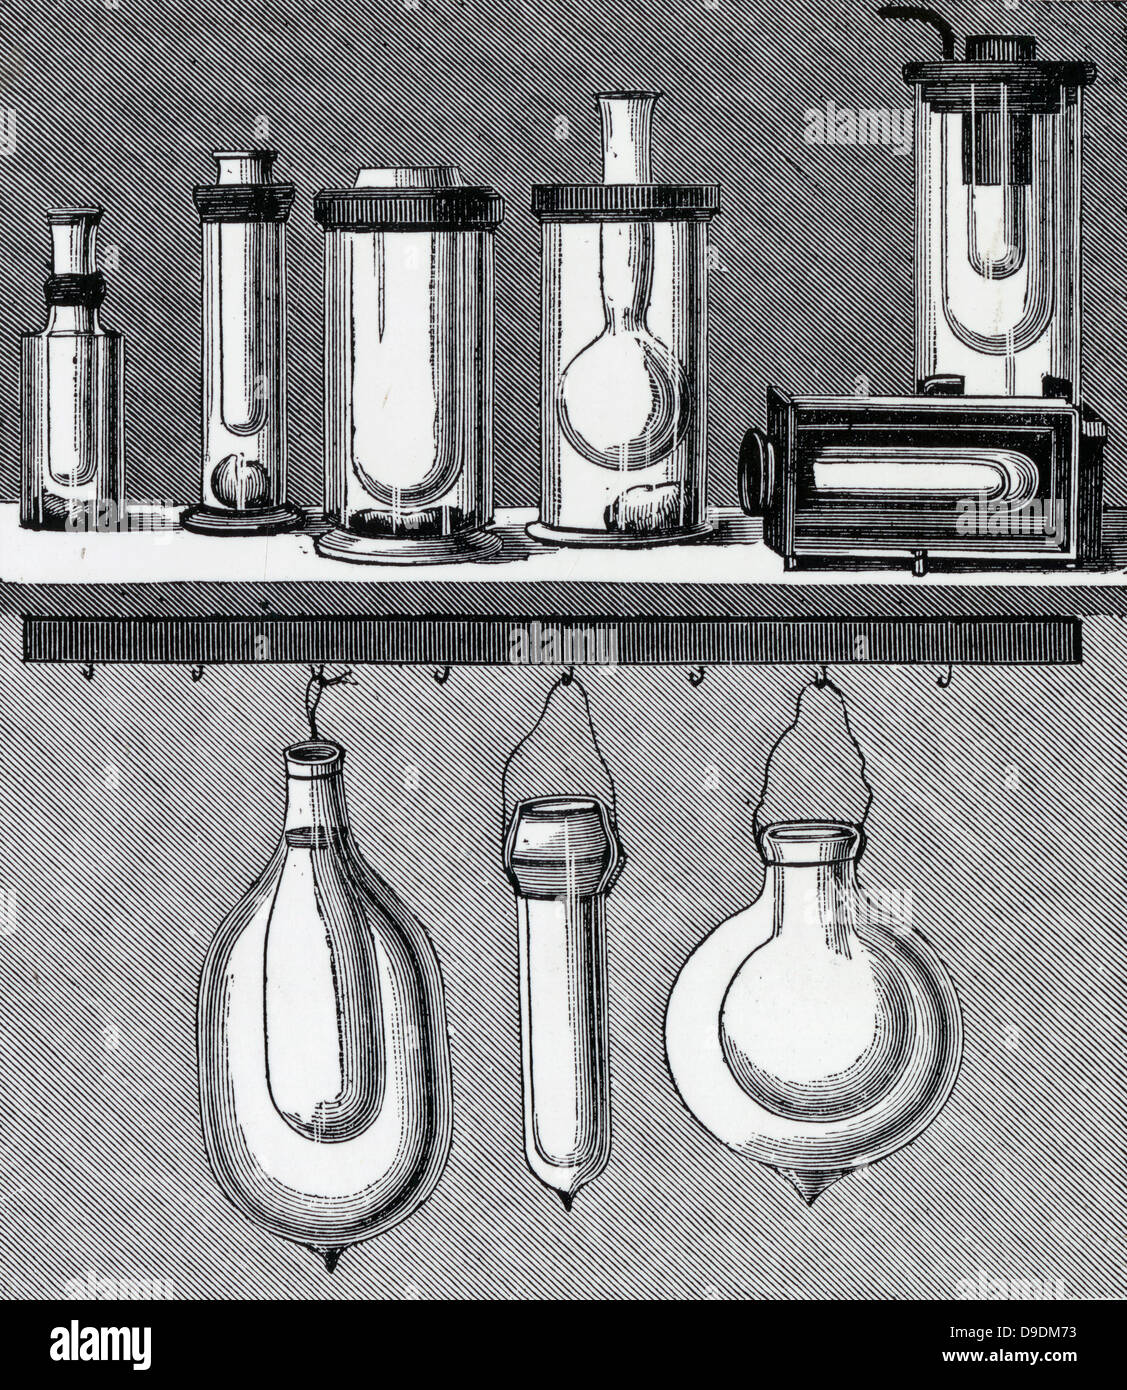 James Dewar's (1842-1923) Erfinder der Thermosflasche. Seine alten  Flaschen, oben, und neue Flaschen. Von seinem "flüssigen atmosphärischen  Luft'', London, 1893 Stockfotografie - Alamy